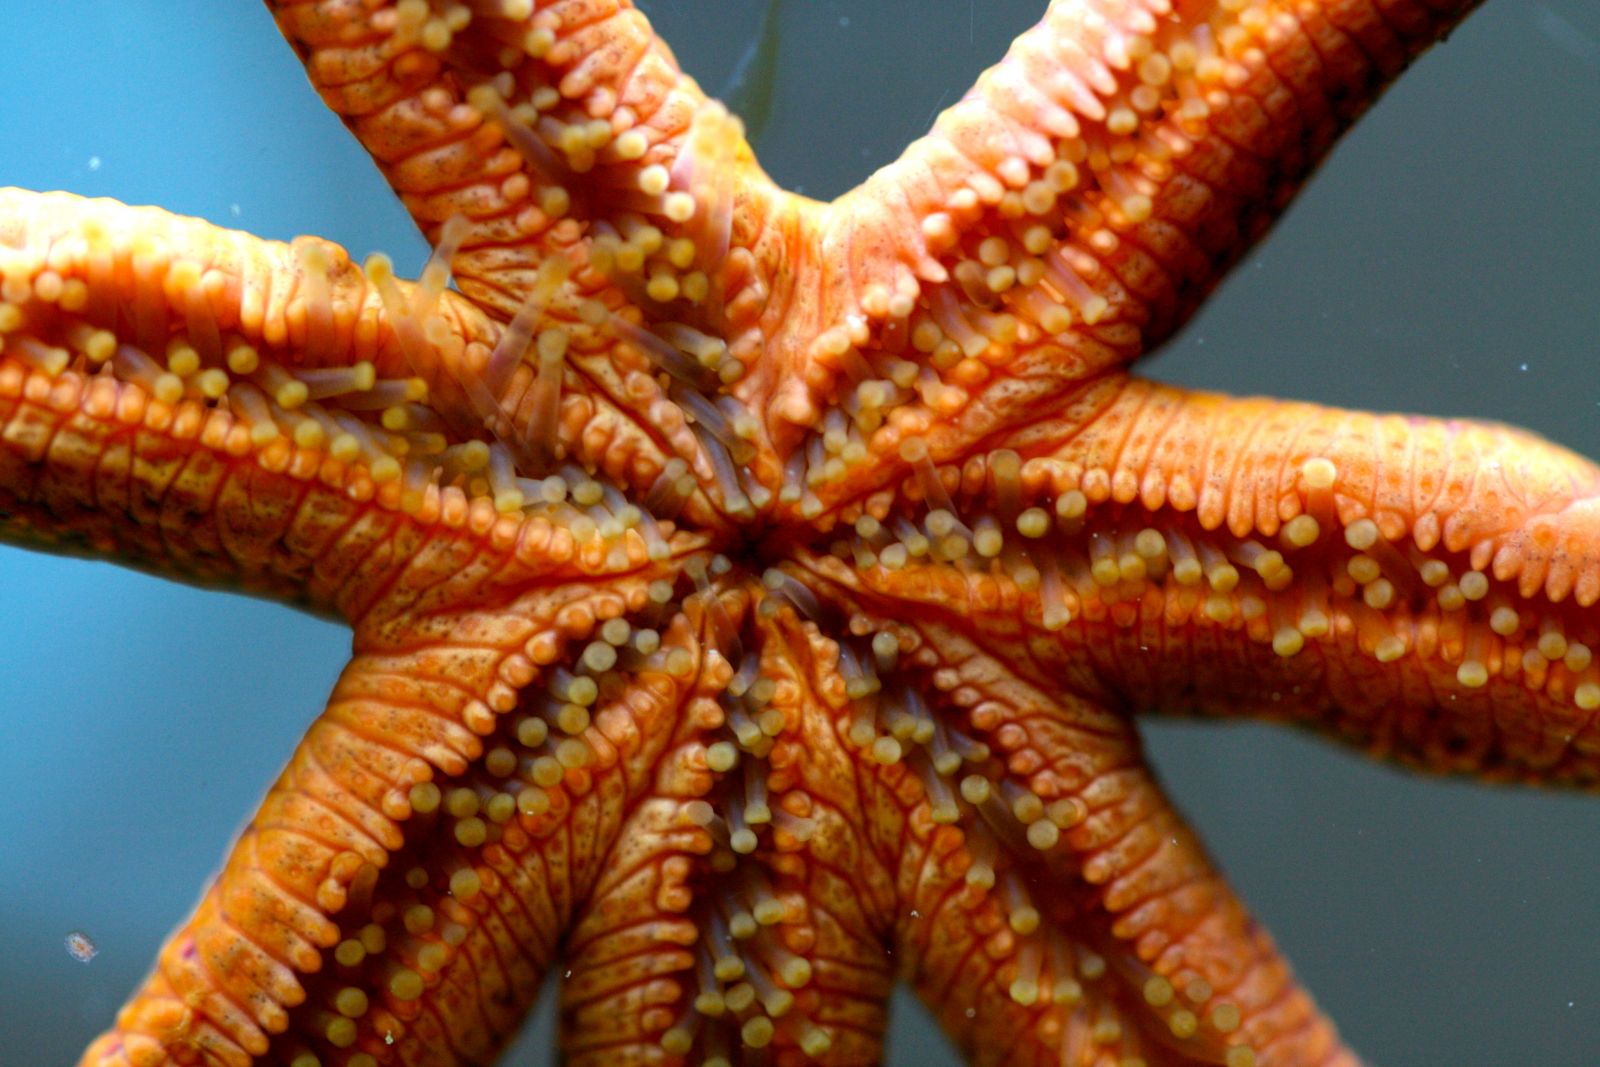 Фото морской звезды в аквариуме победителя конкурса Мое море в Аква Лого